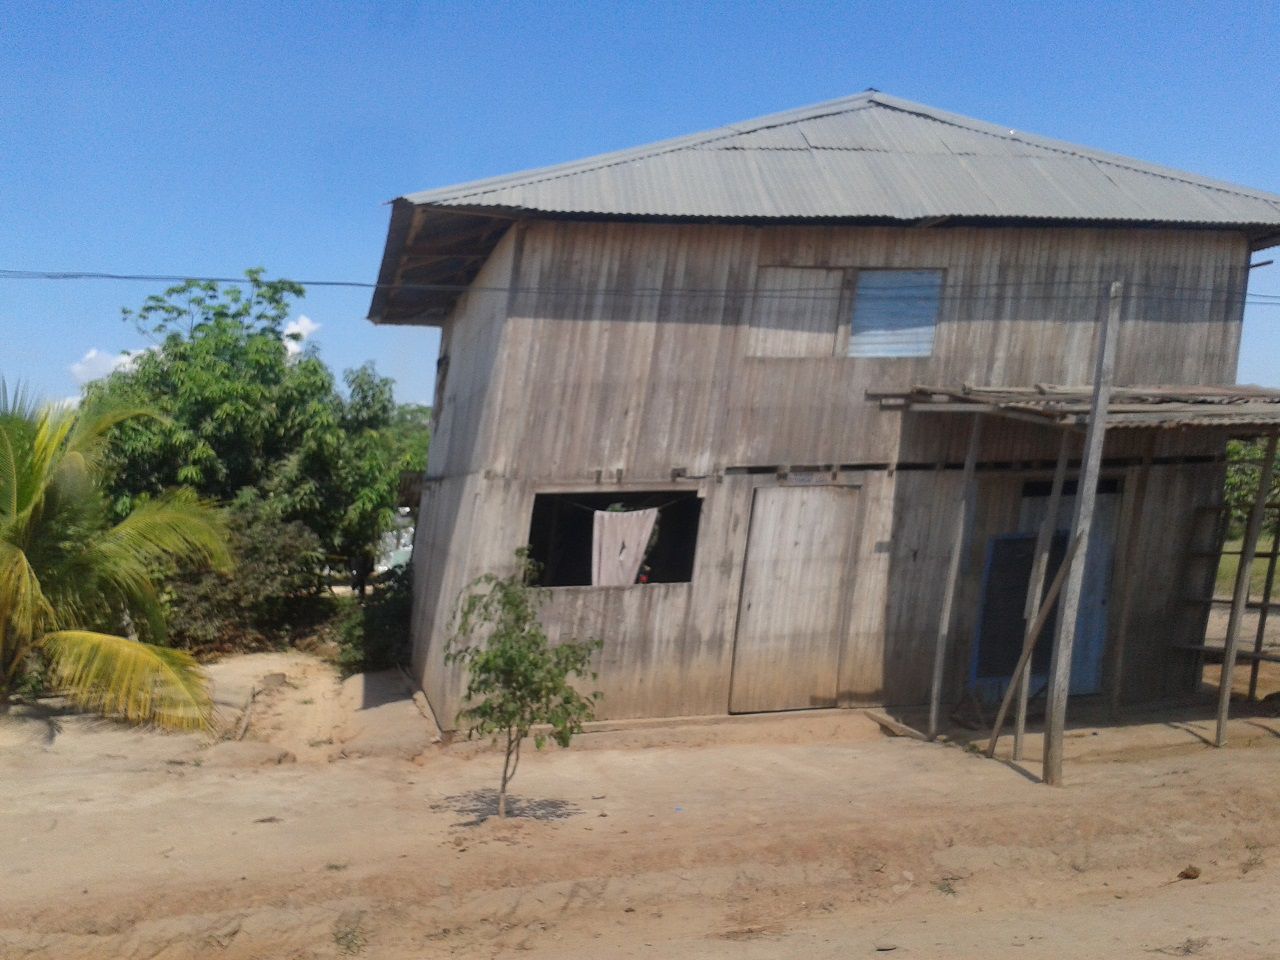 такие дома у местного населения - Айяуаска.